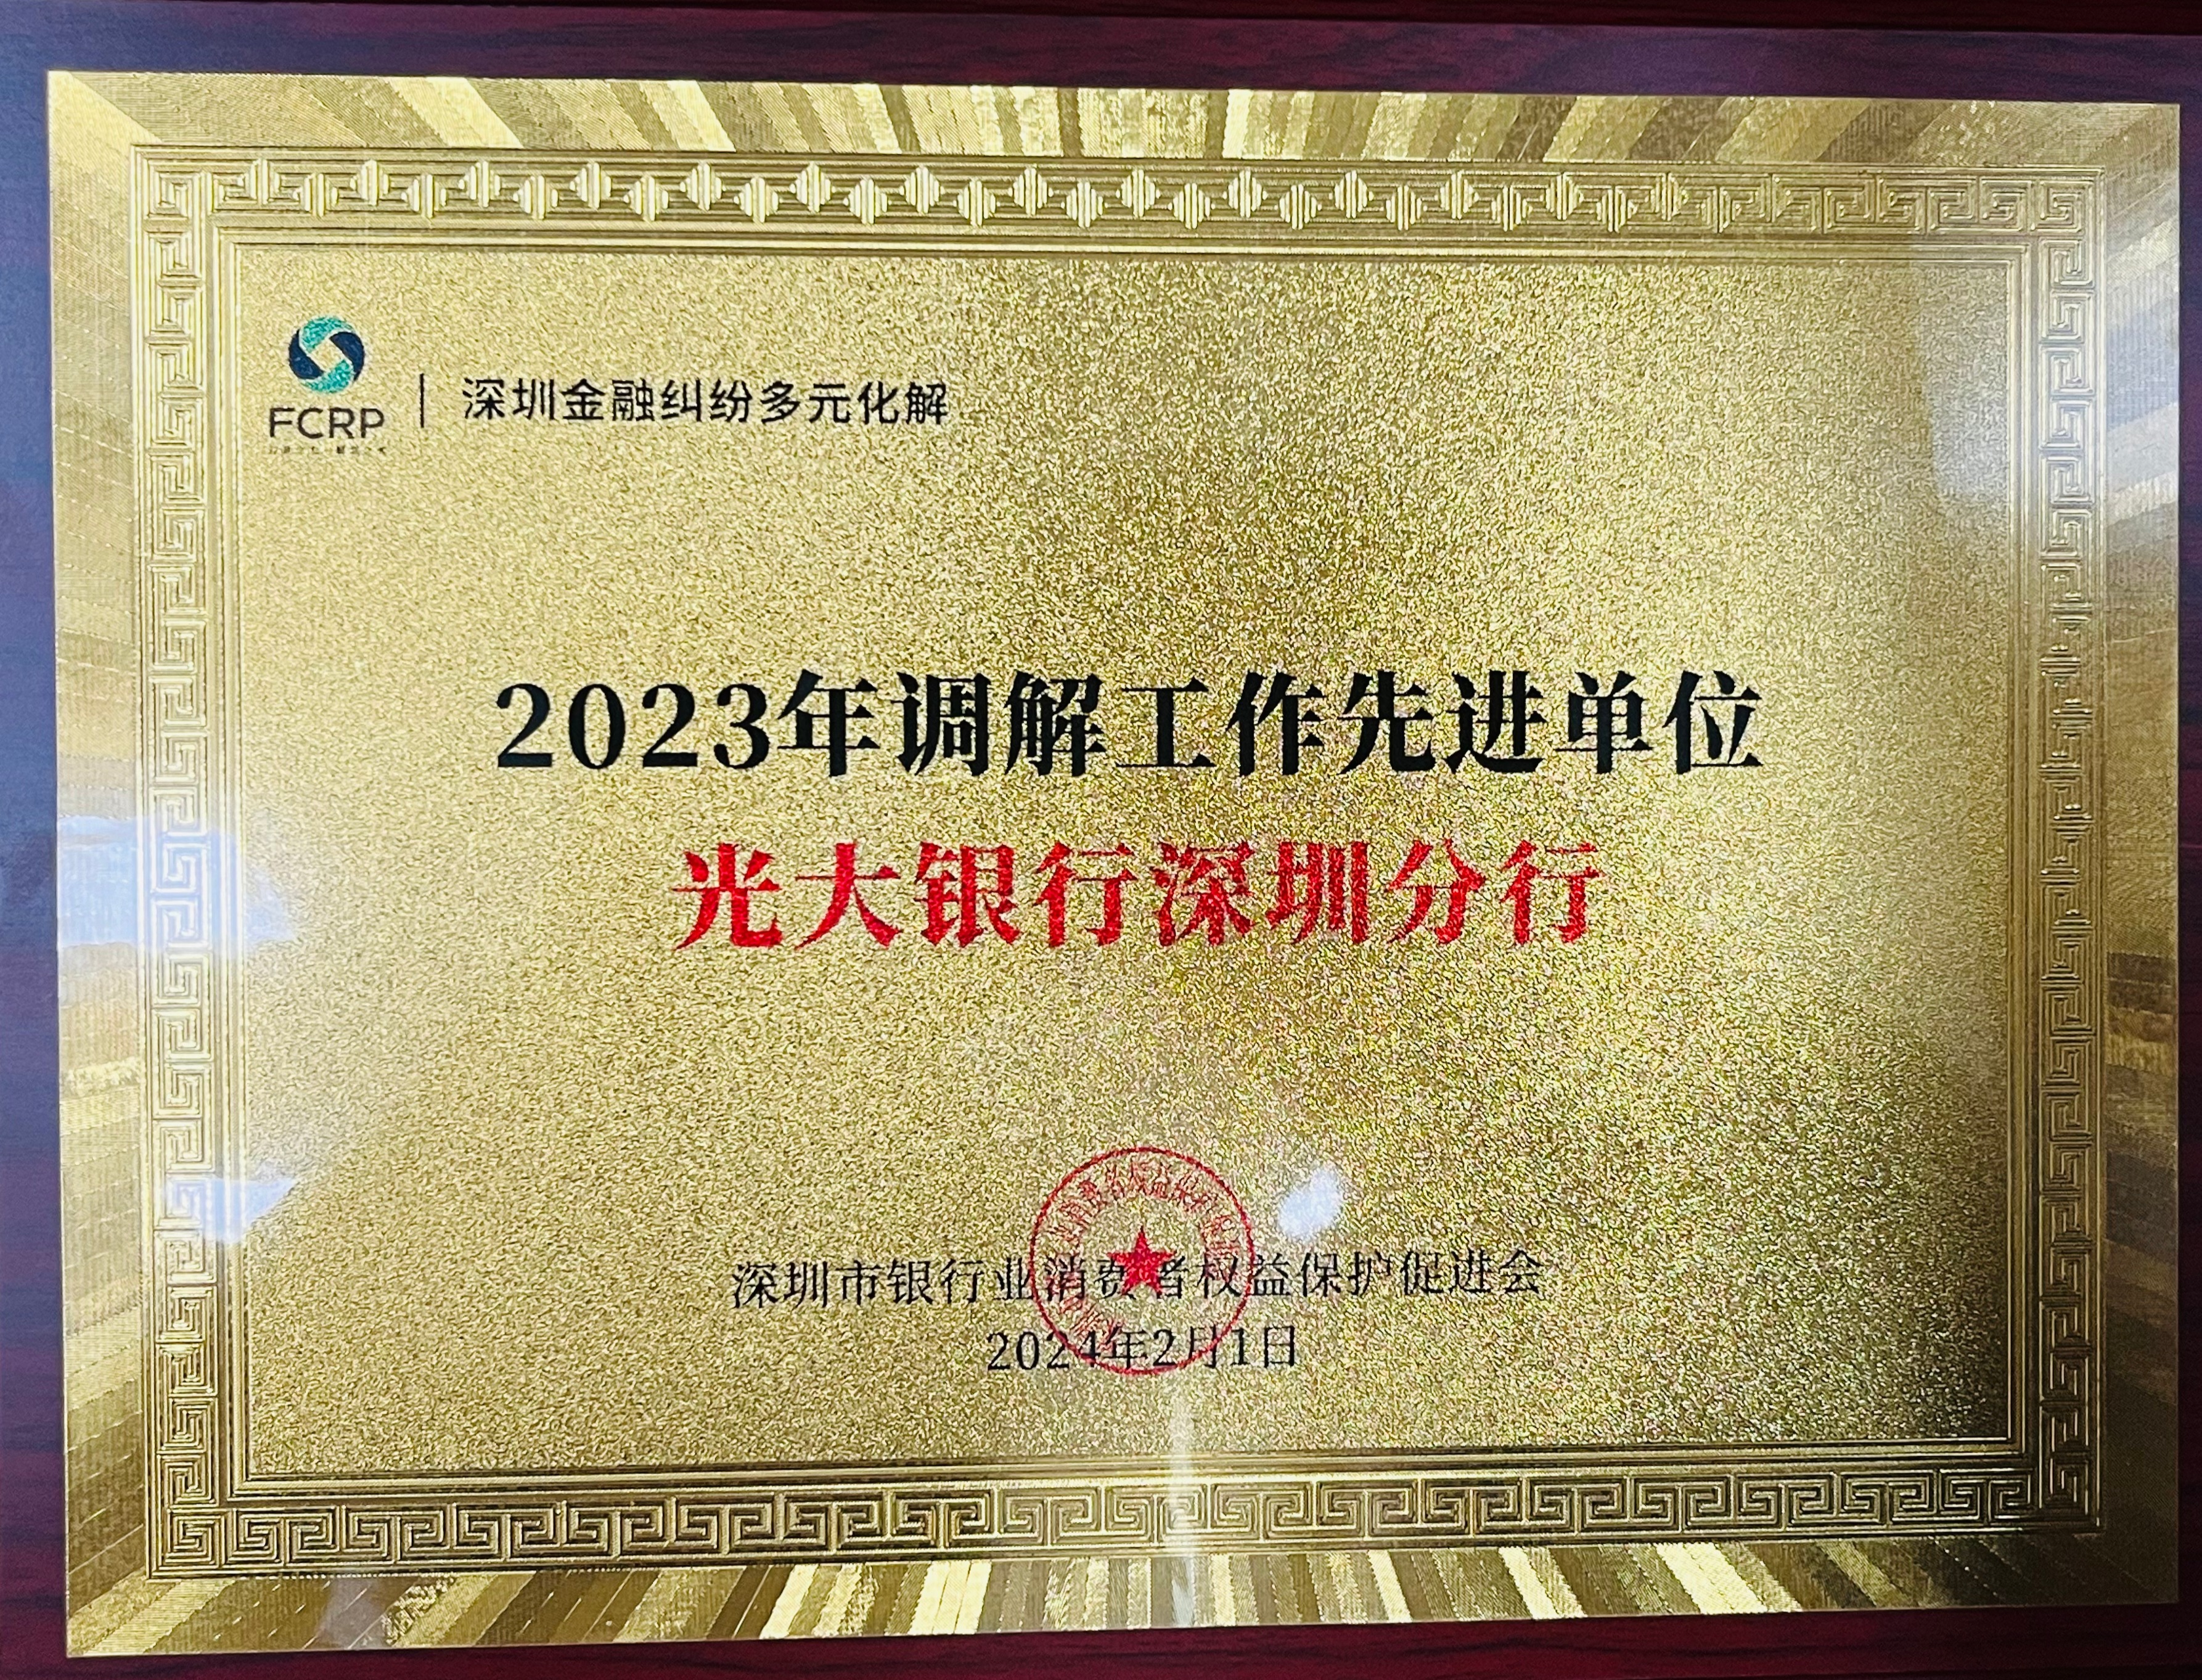 光大银行深圳分行获“2023年调解工作先进单位”等多个奖项